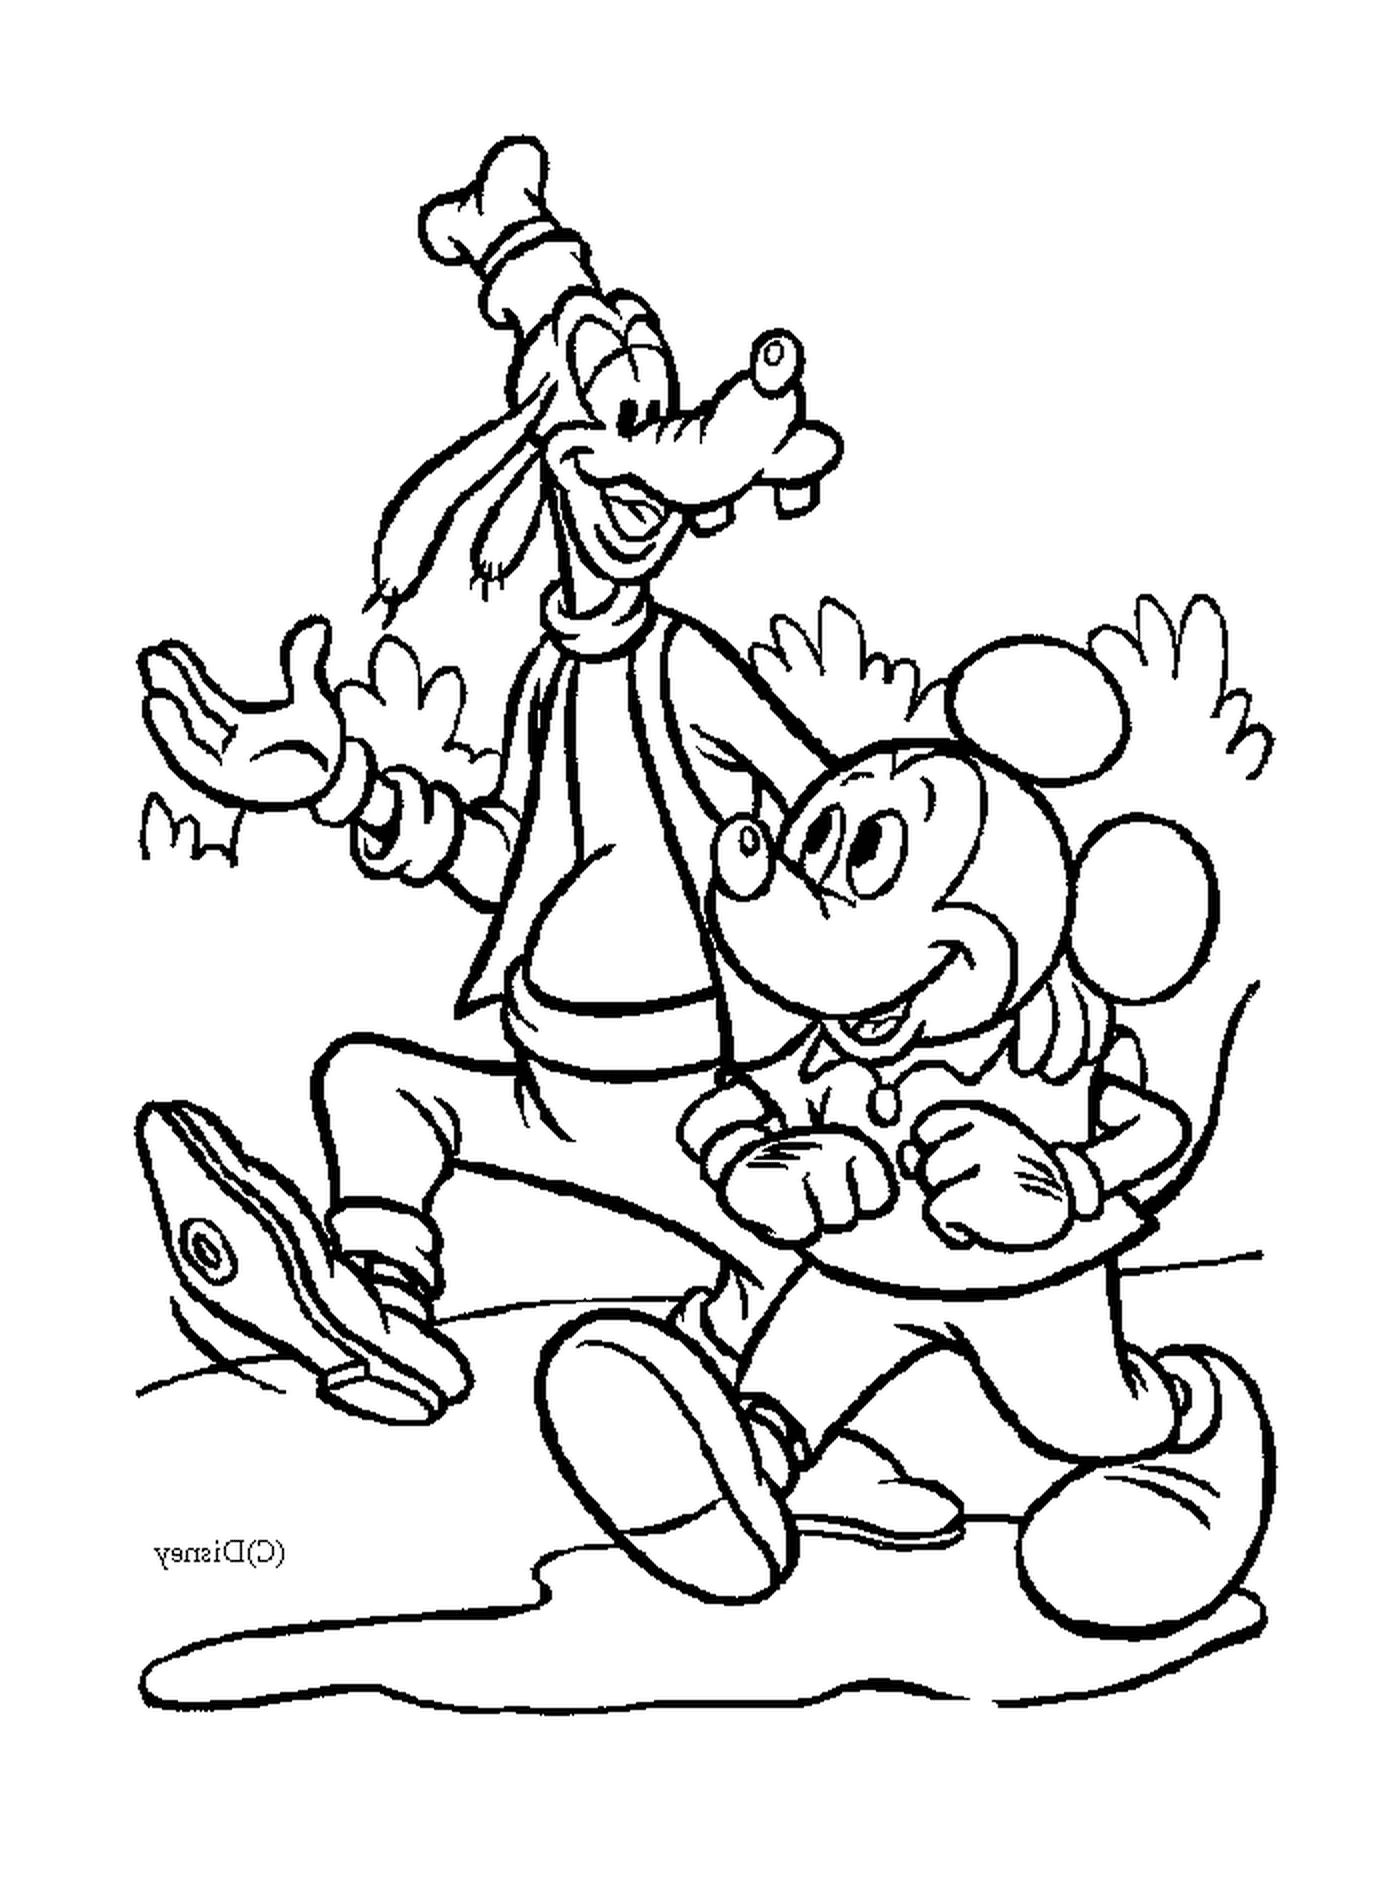  Mickey e il suo amico Dingo camminano: Mickey e Dingo 